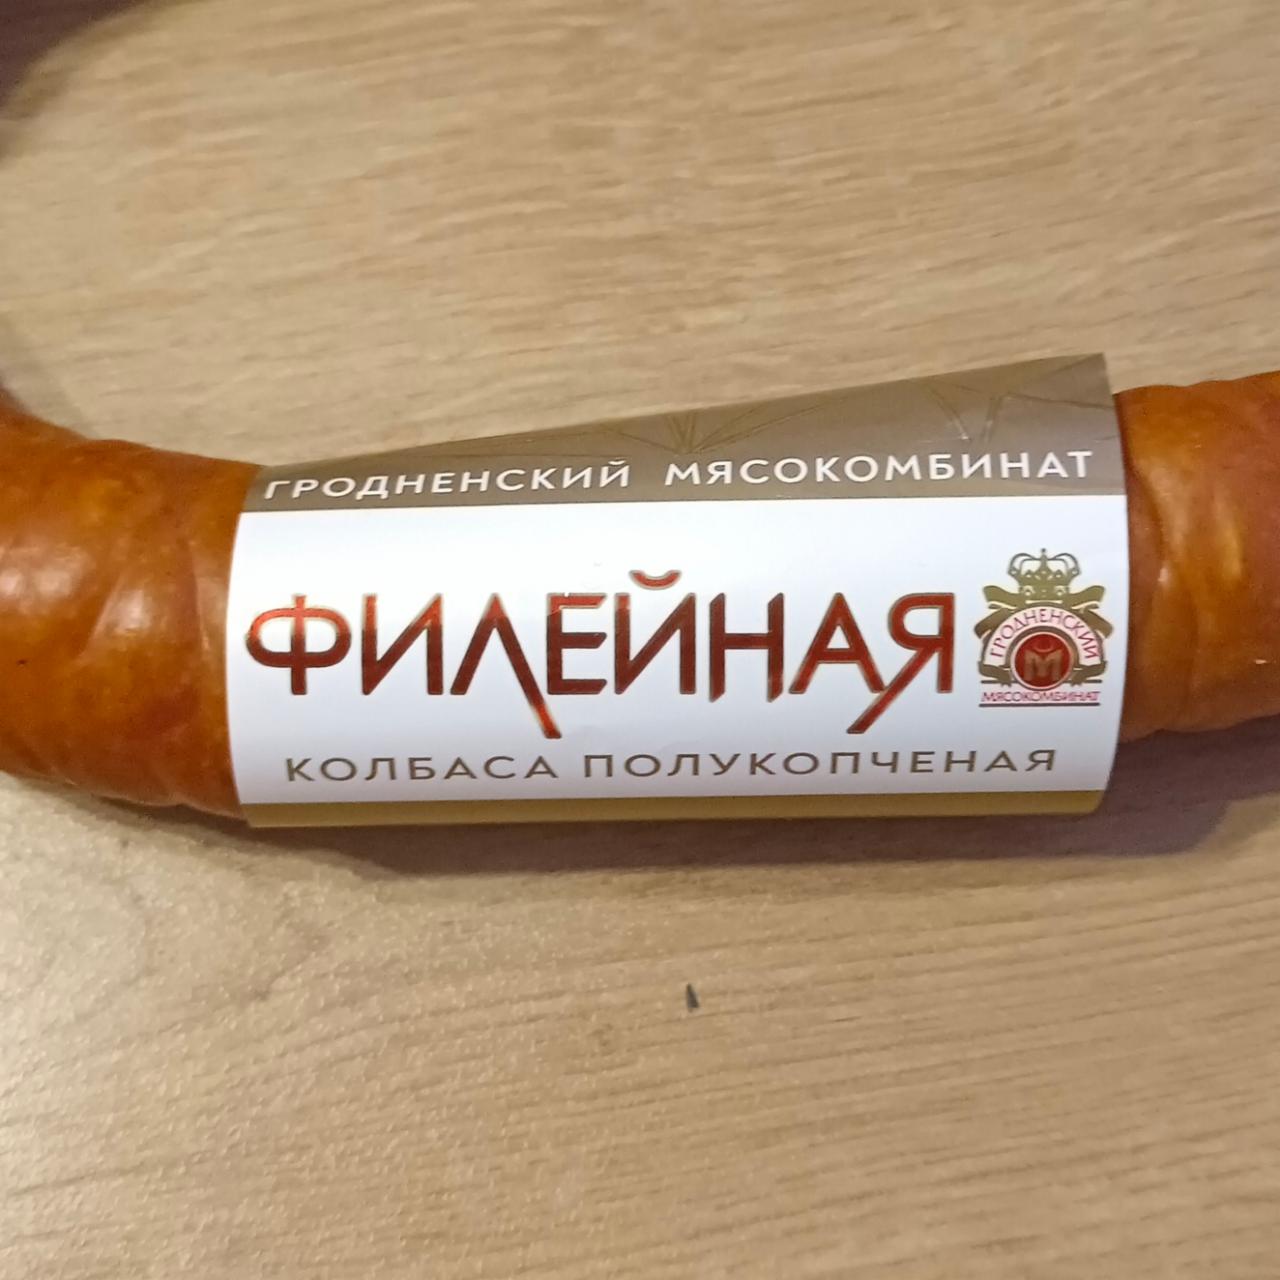 Фото - Колбаса полукопченая филейная Гродненский мясокомбинат